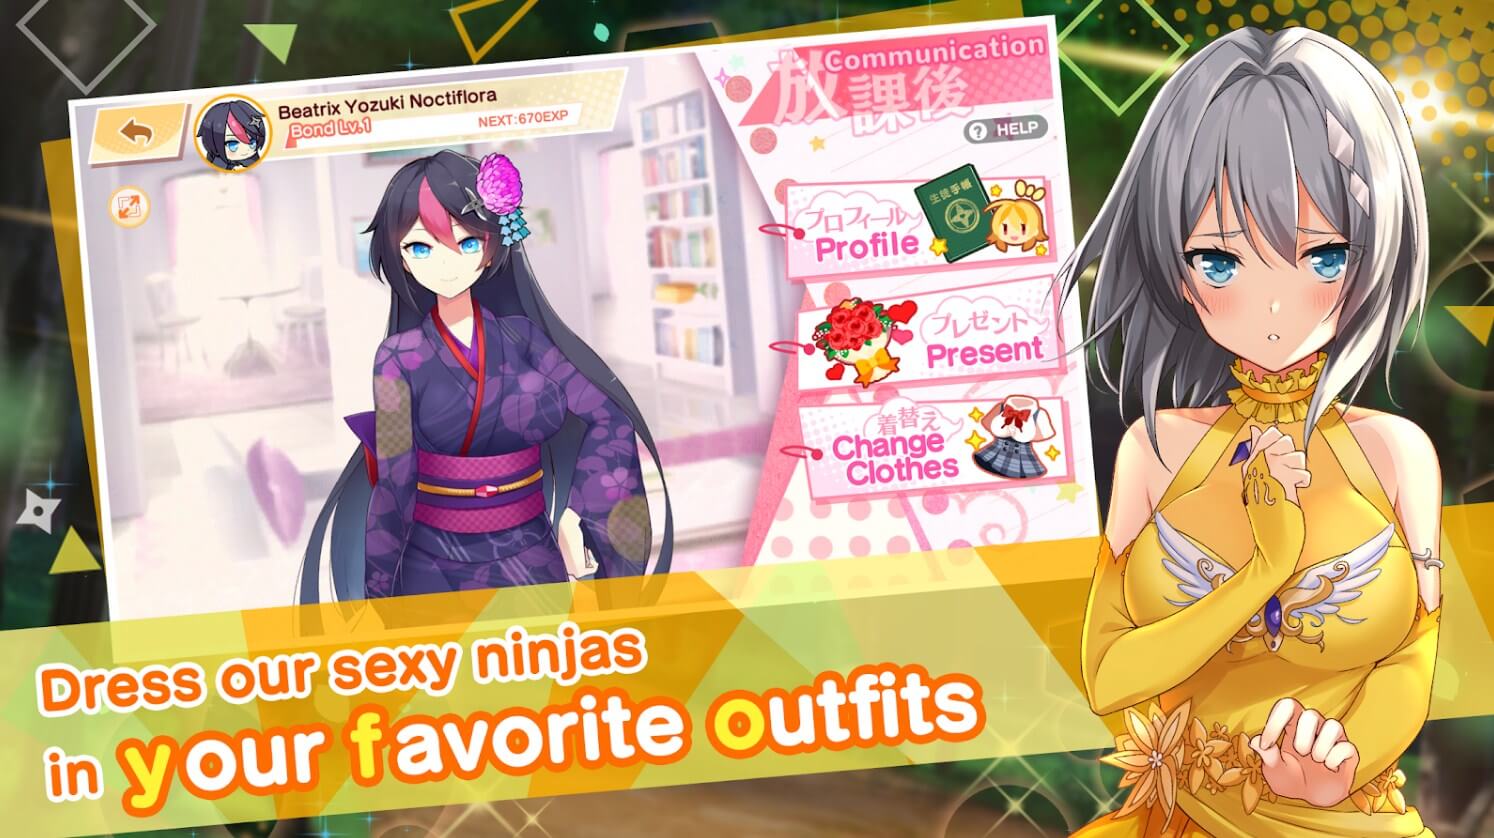 Moe! Ninja Girls RPG: SHINOBI outfits